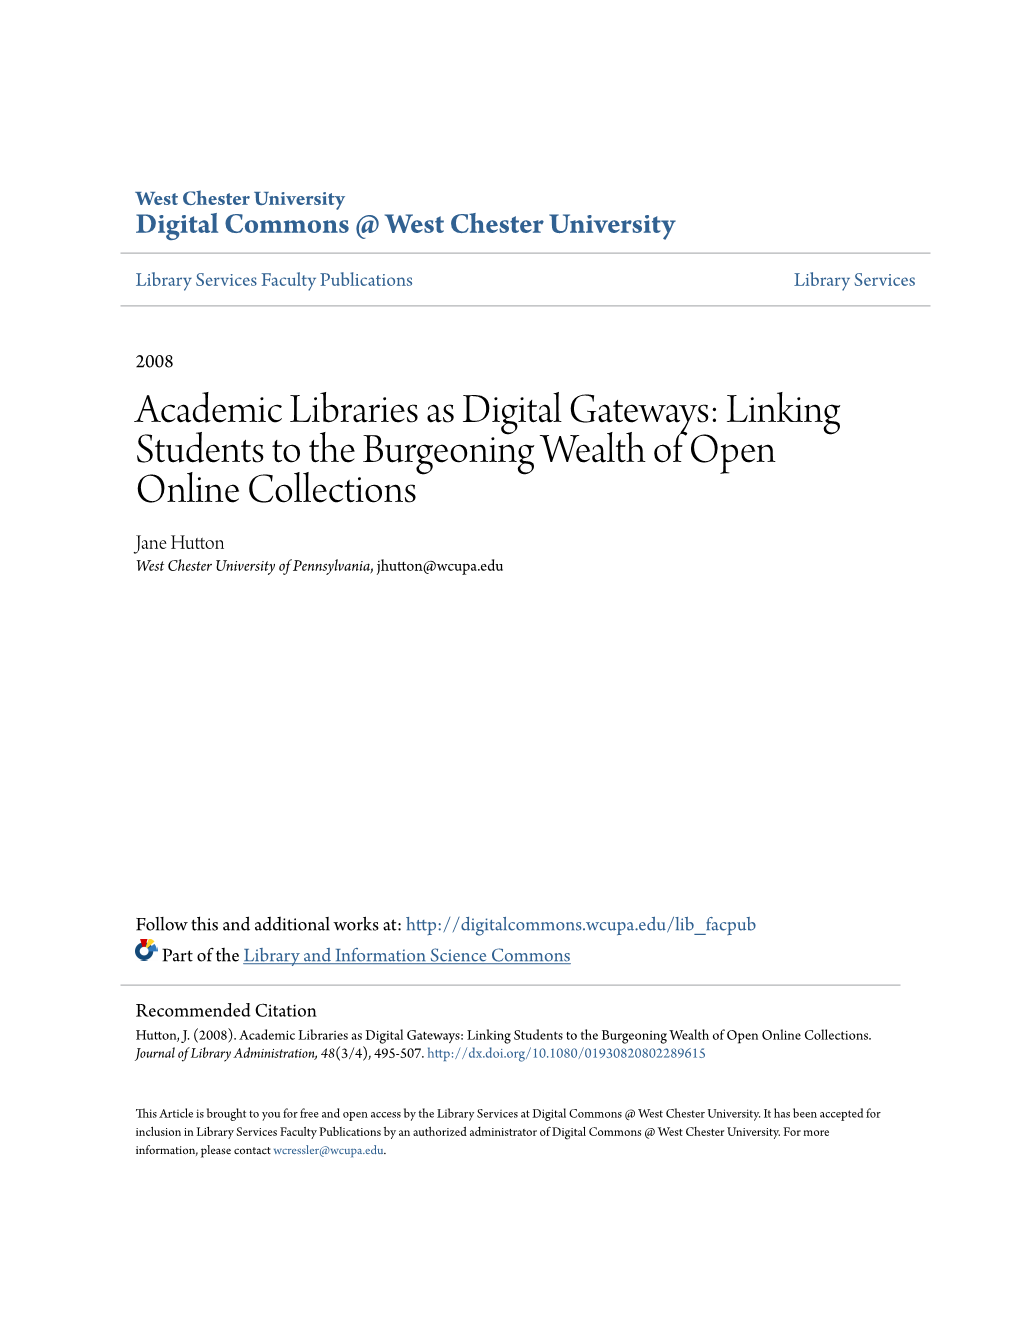 Academic Libraries As Digital Gateways